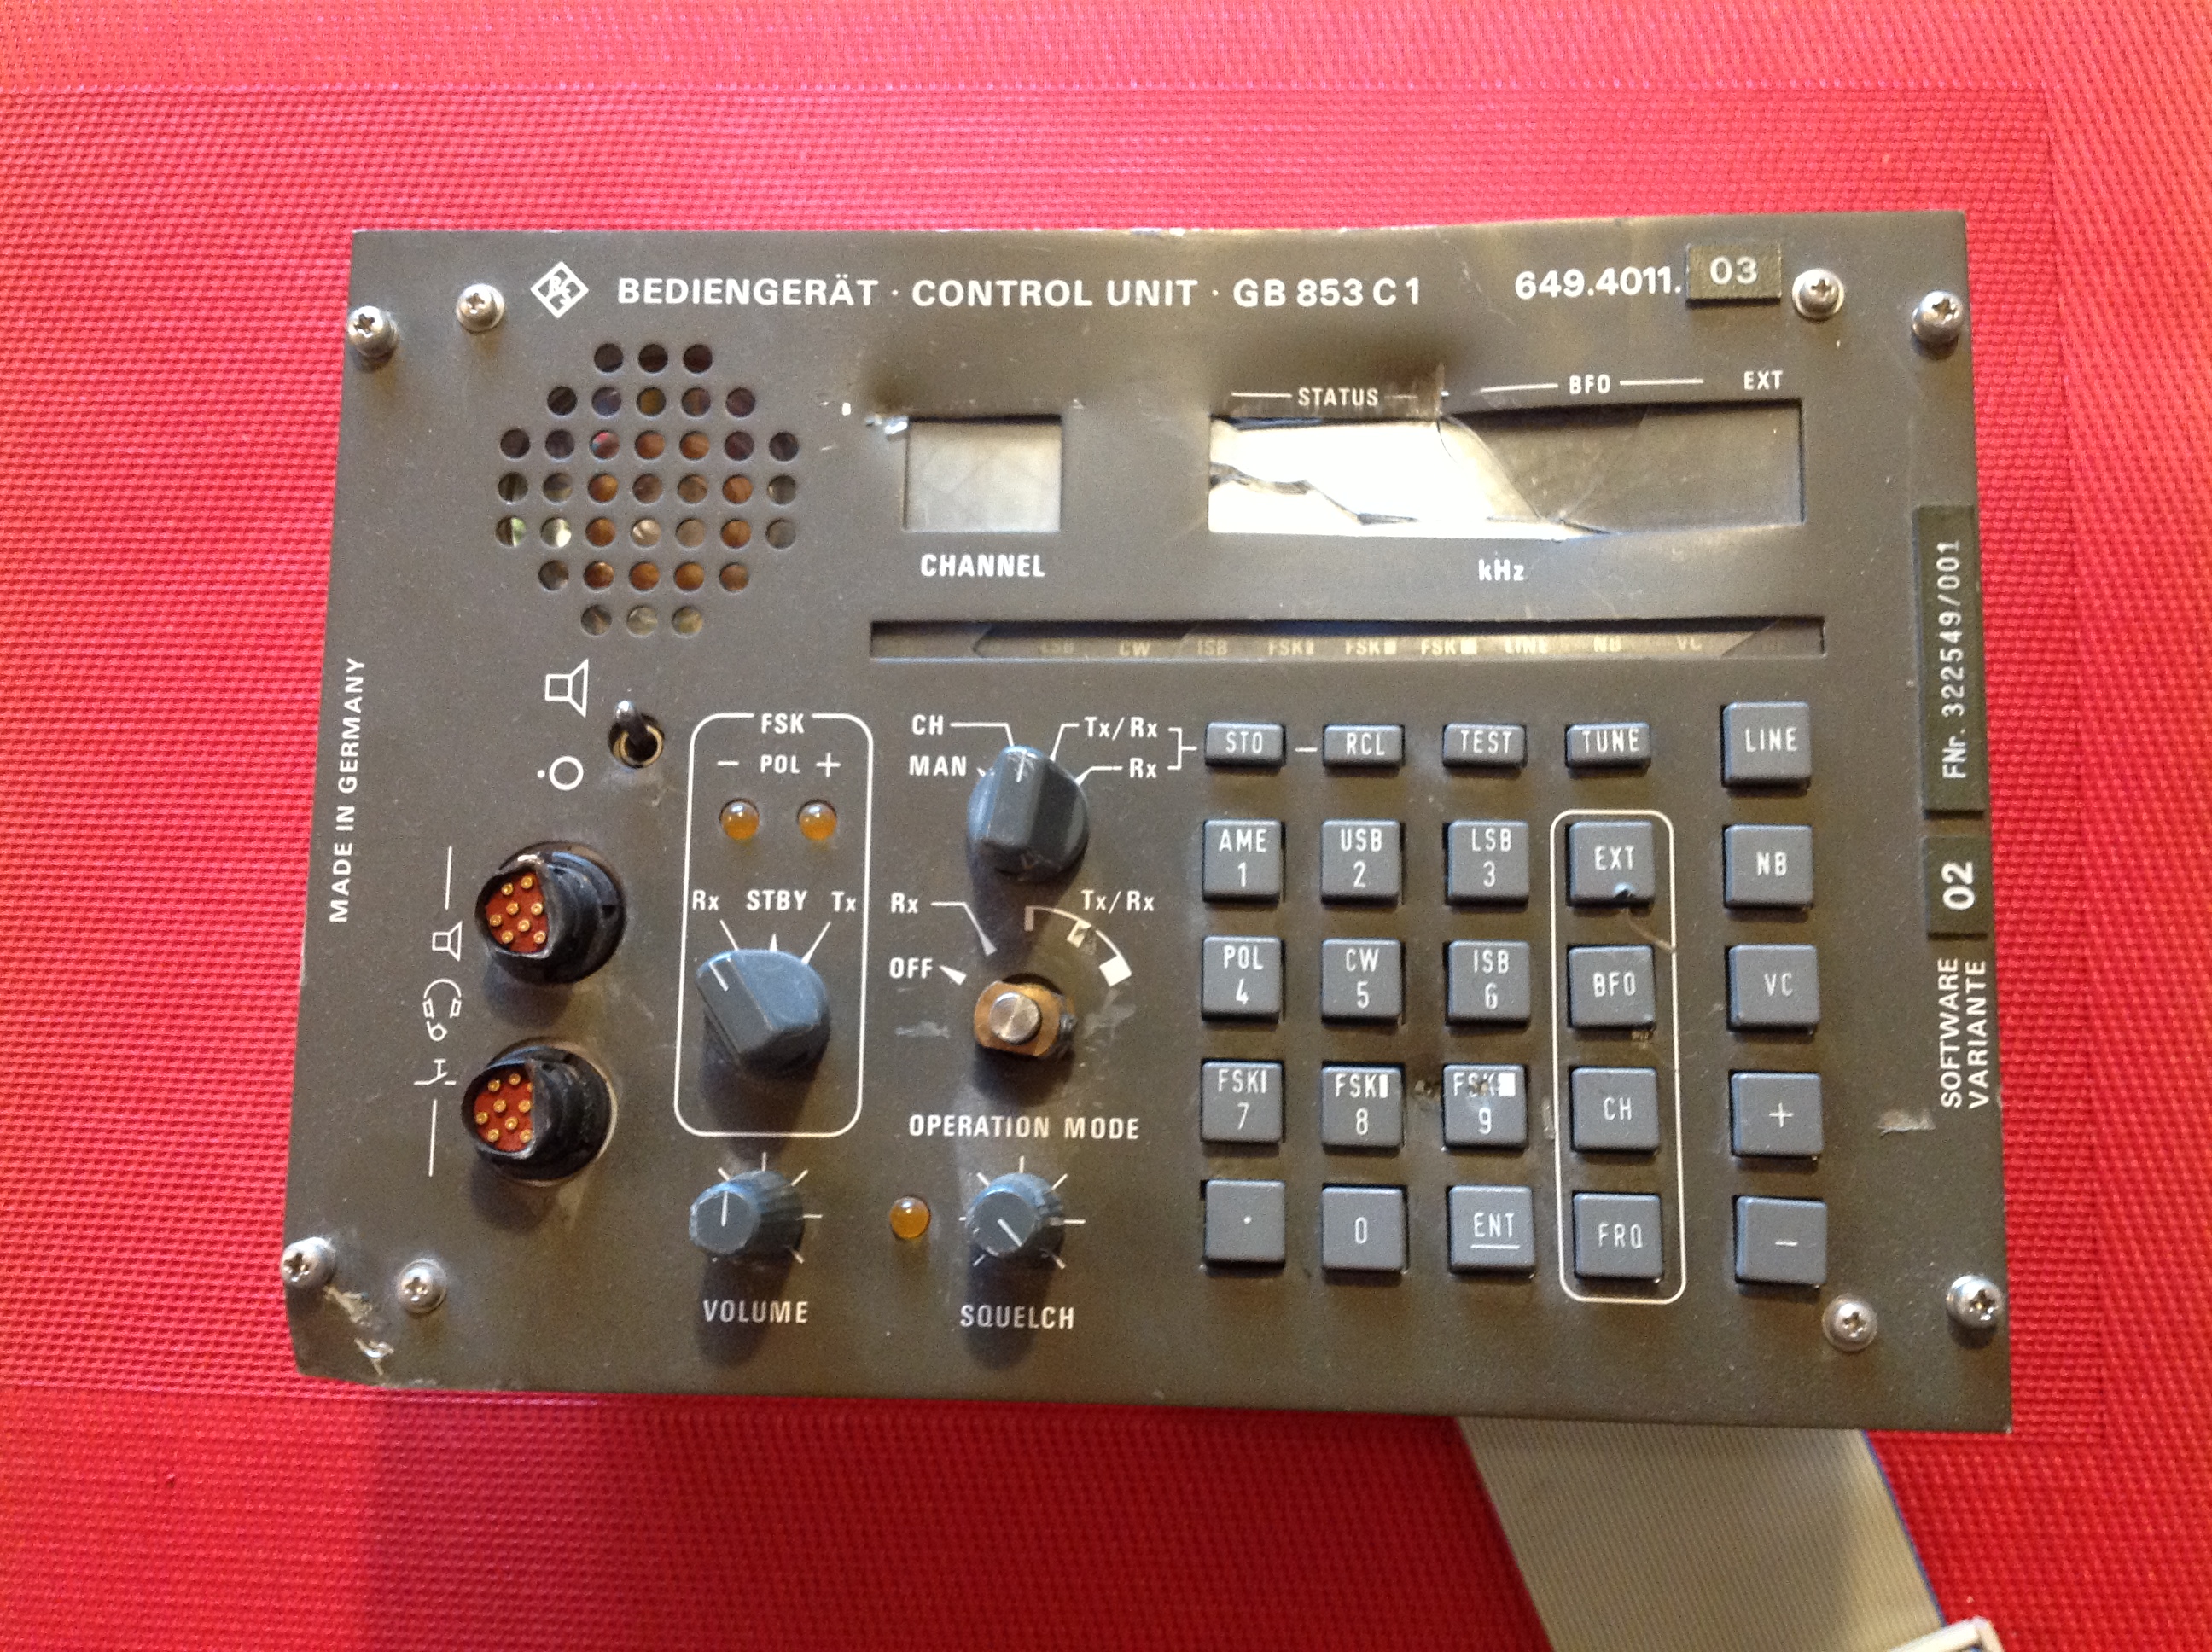 Rohde & Schwarz Bediengerät-Control Unit GB 853 C1 für Rohde & Schwarz Sender/Empfänger XK 852 C1